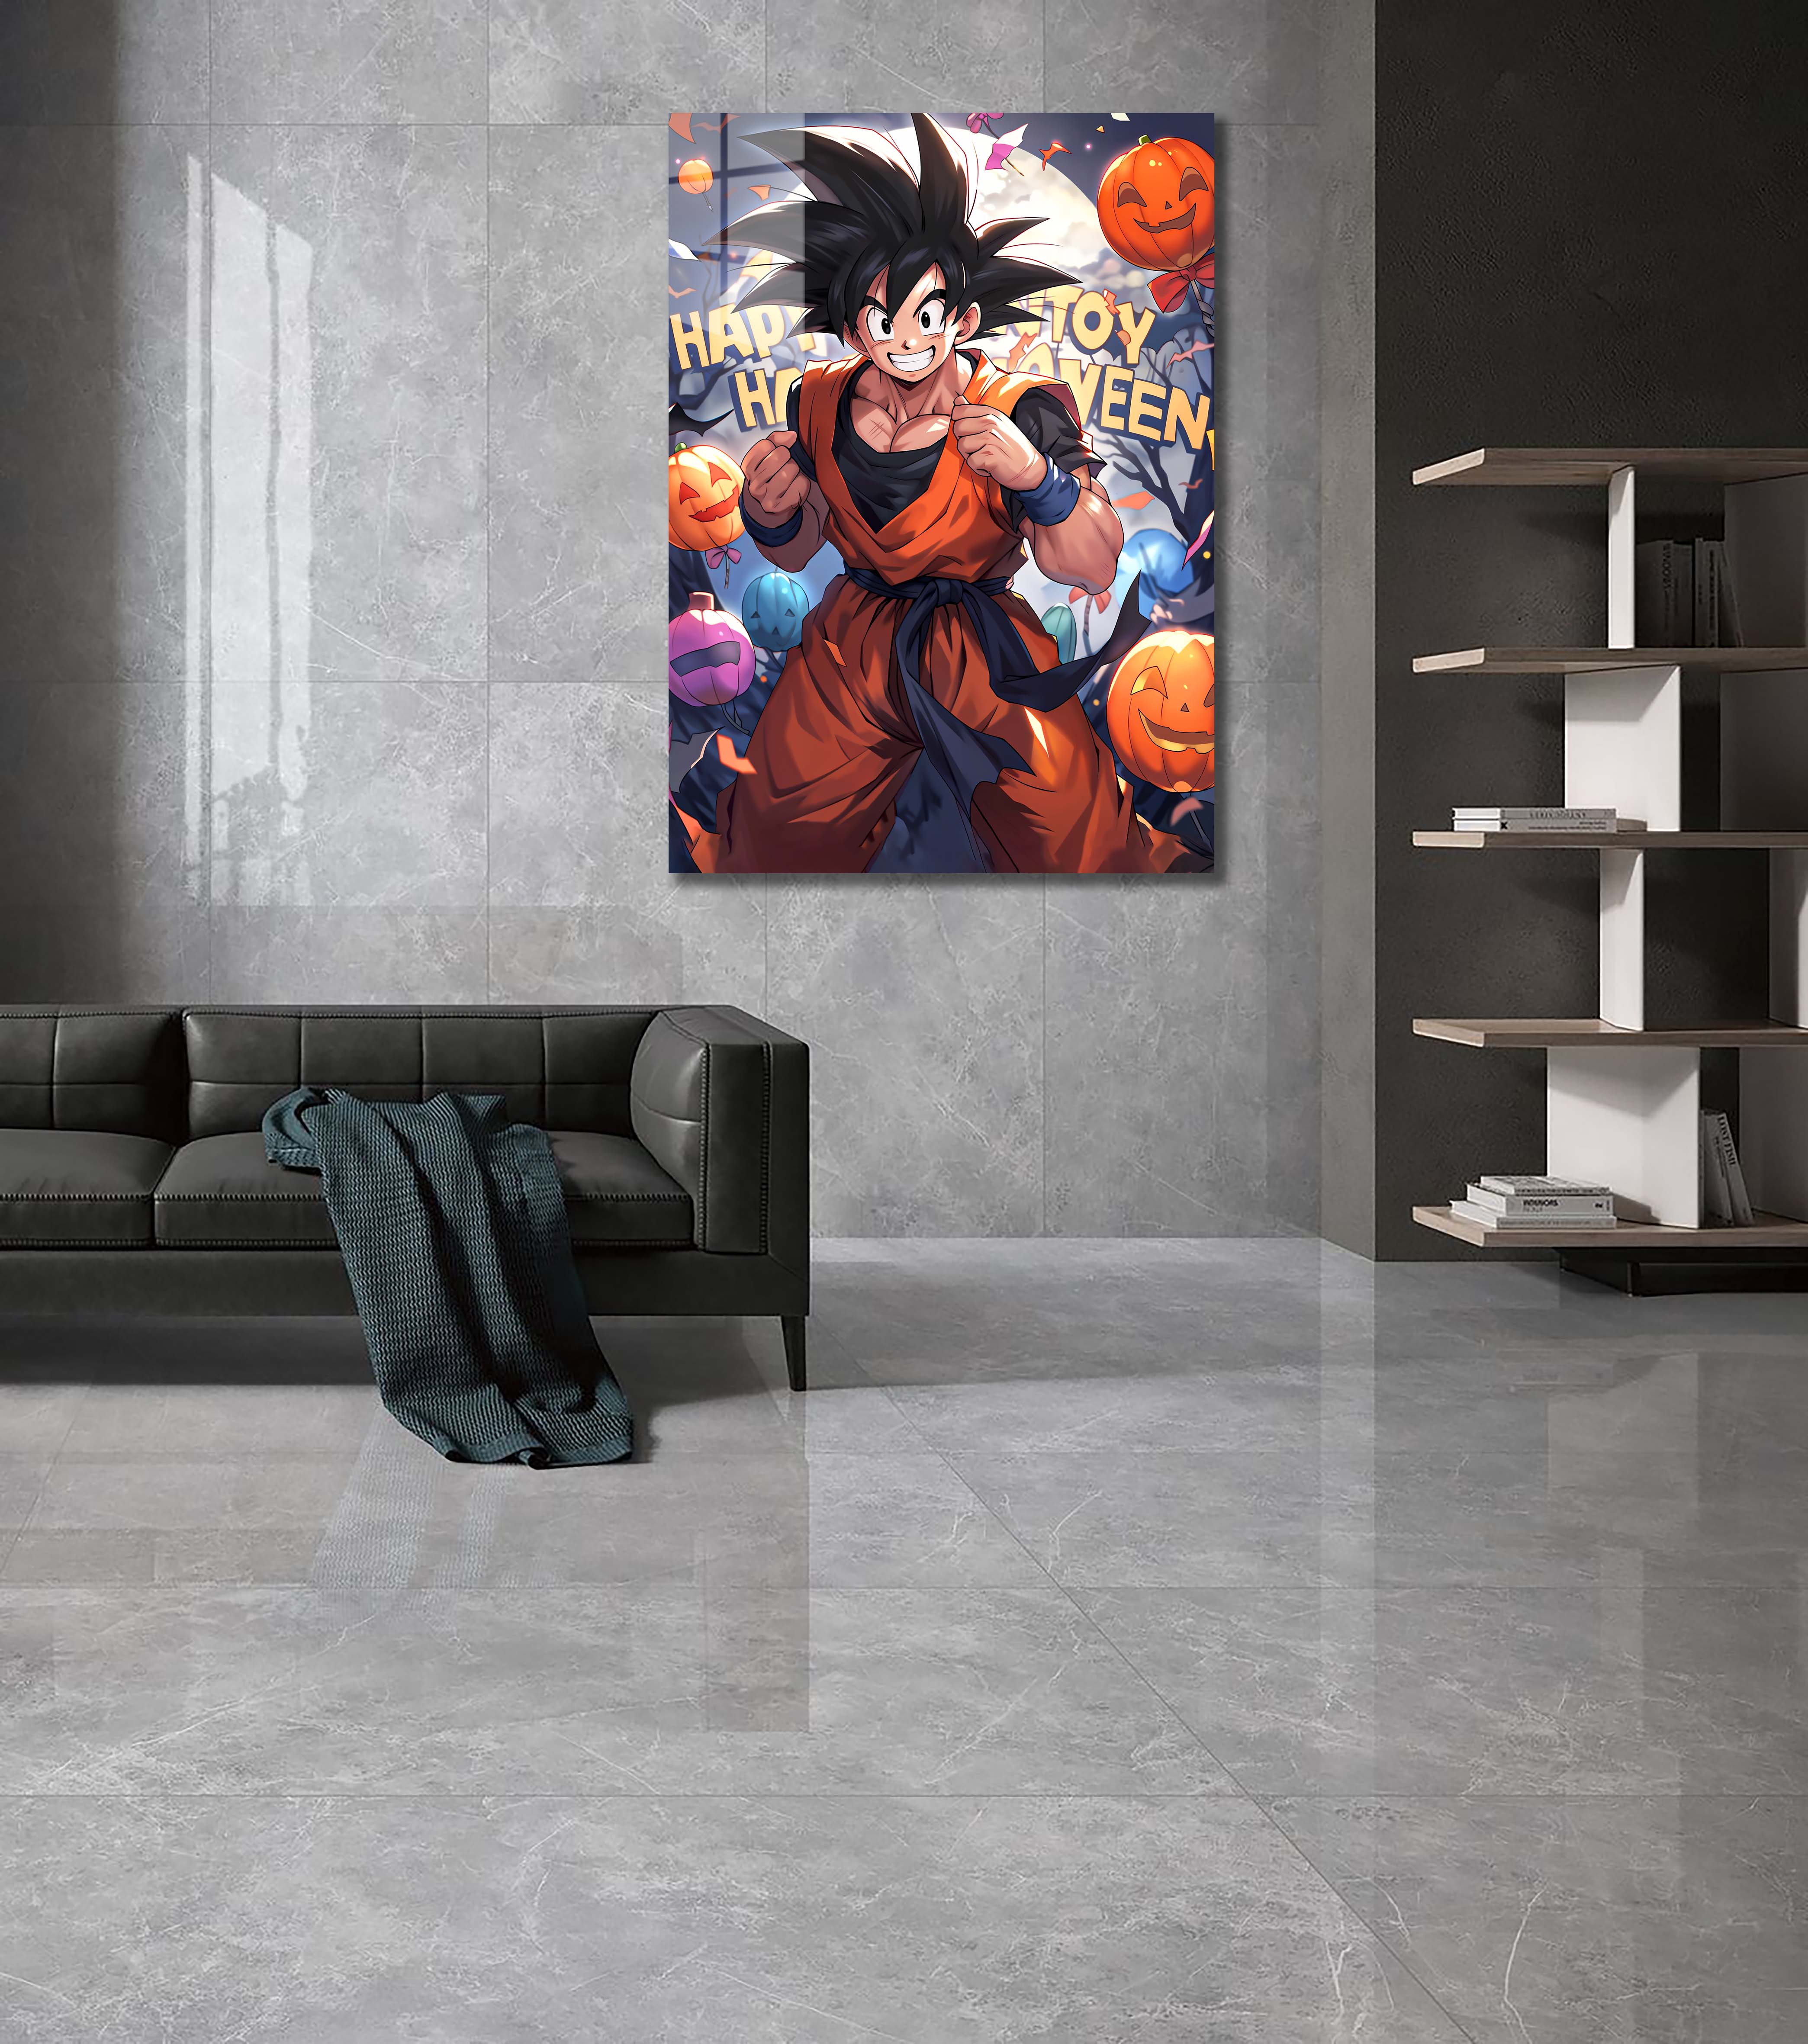 🎃Halloween Goku-designed by @Freiart_mjr